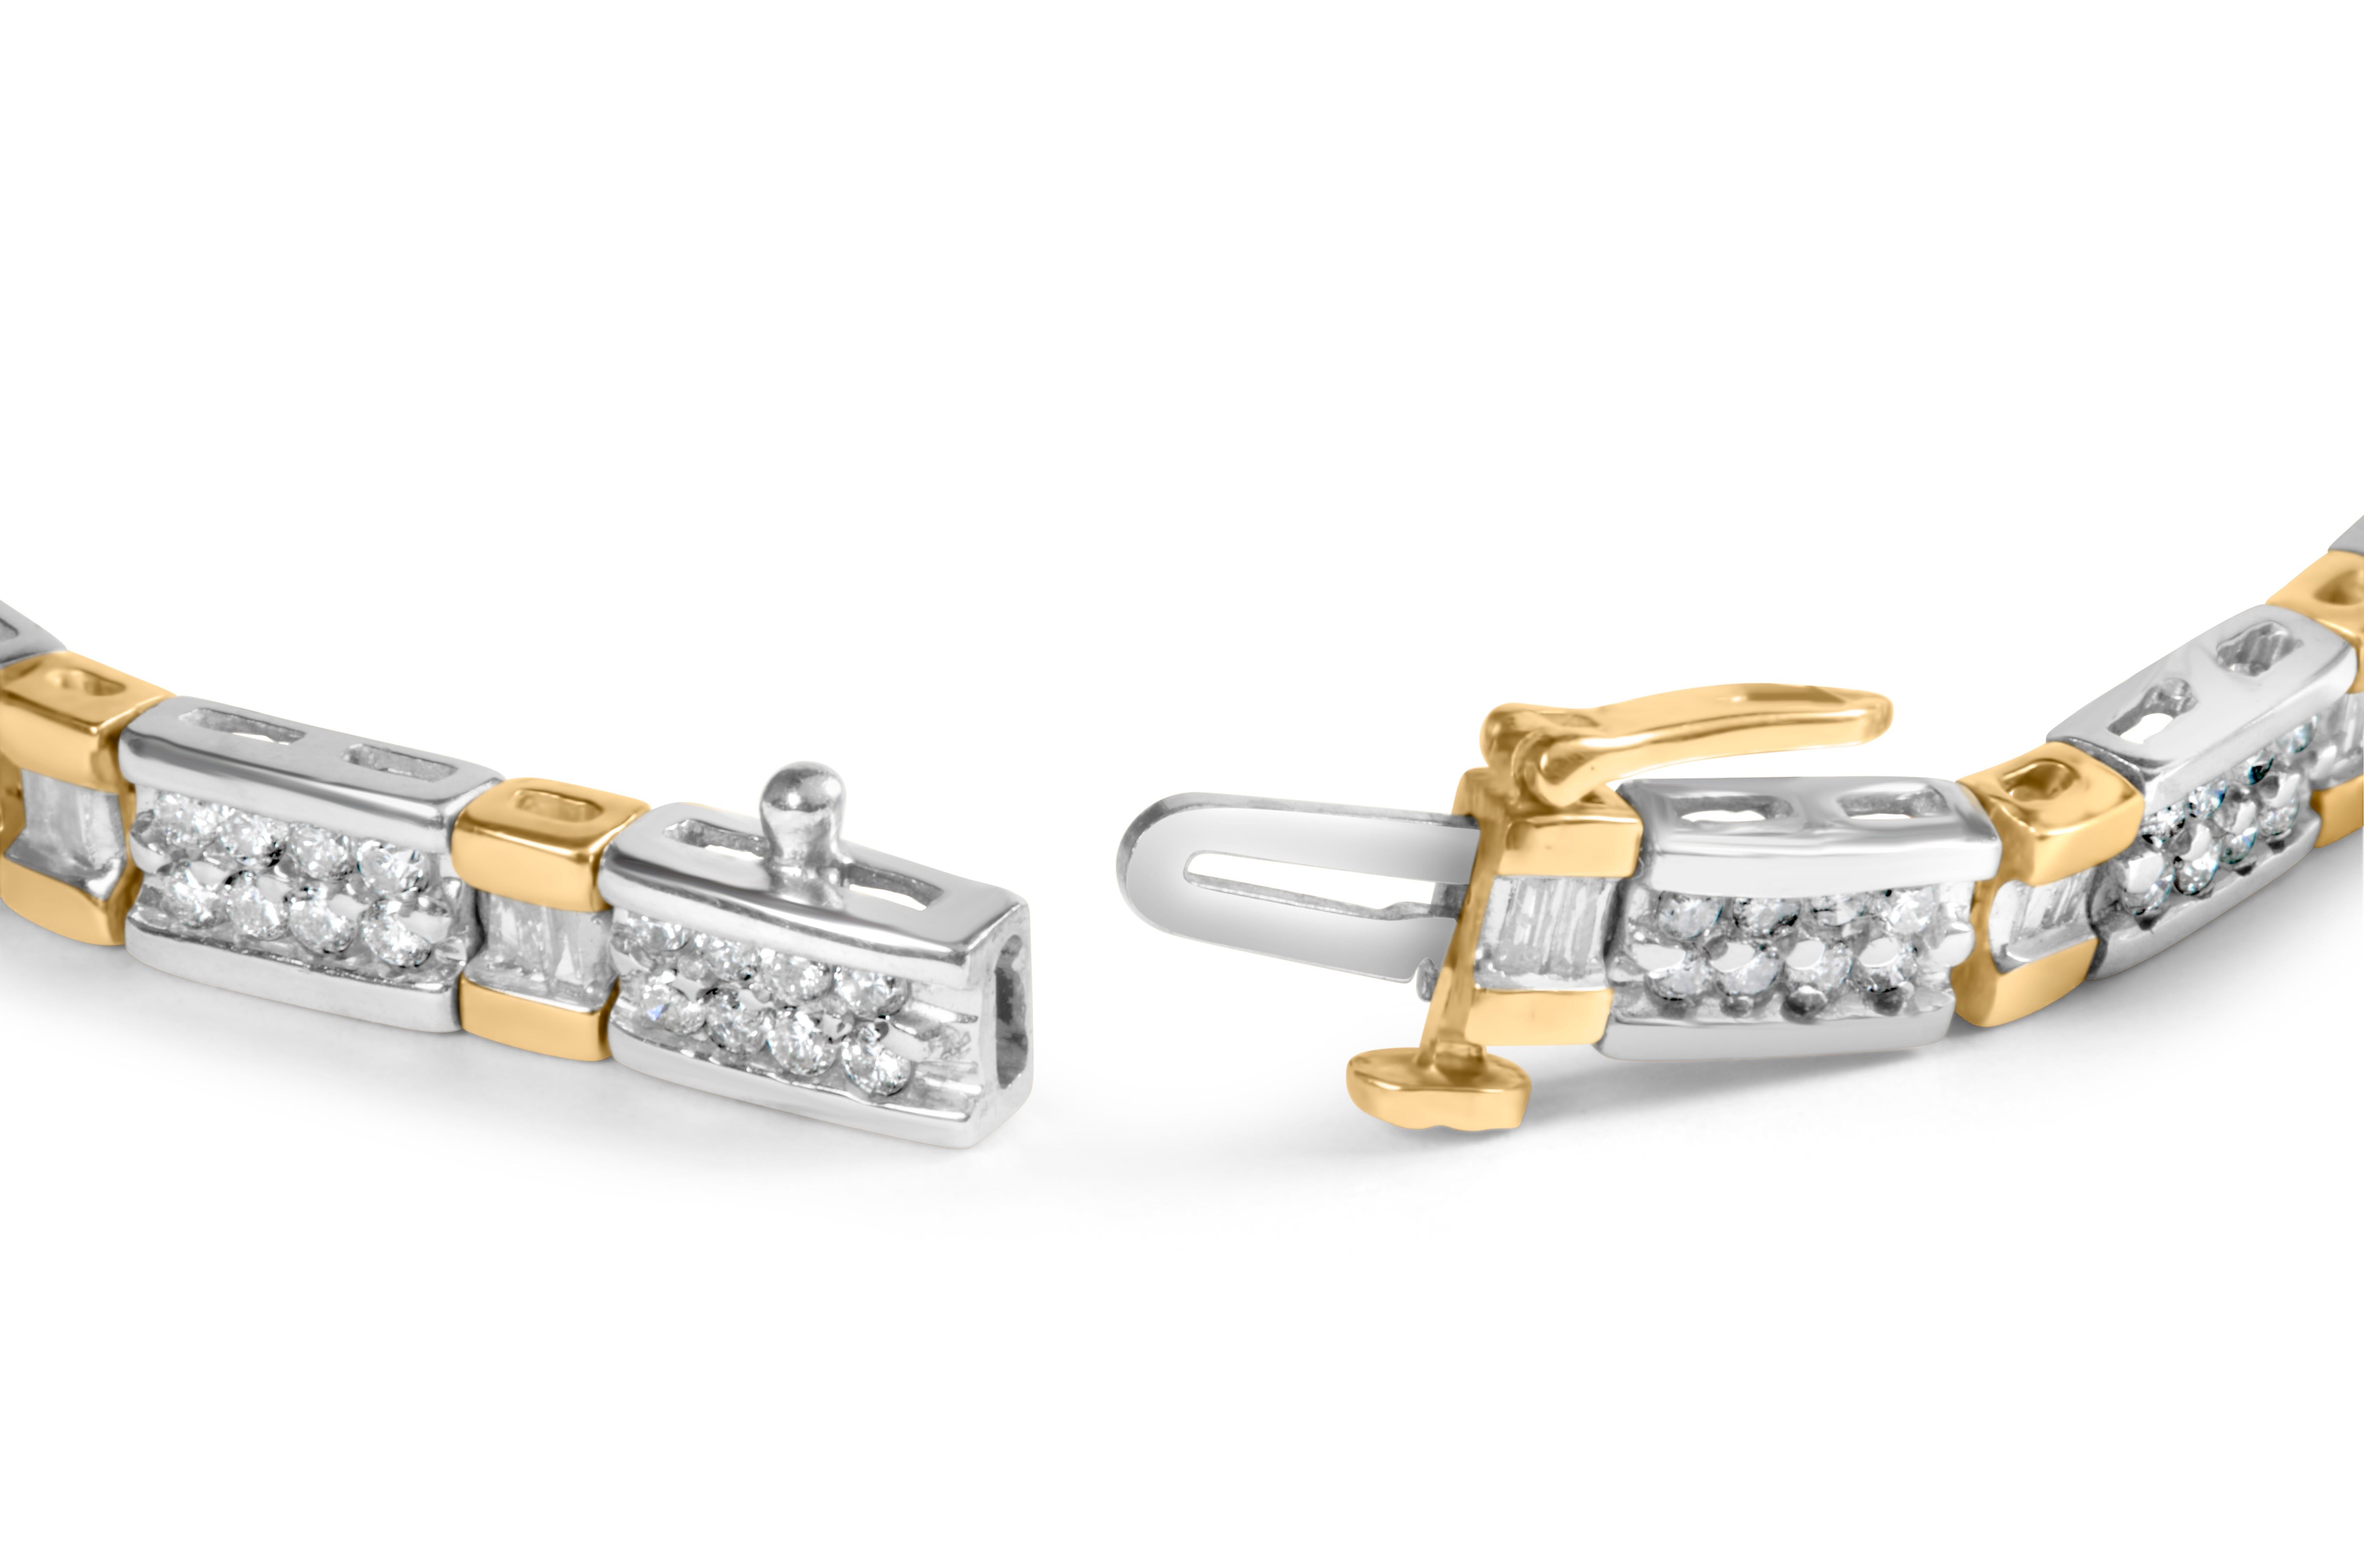 Gönnen Sie sich den Inbegriff von Luxus mit diesem exquisiten Diamantarmband. Das zweifarbige 14-karätige Gold passt perfekt zu den 180 natürlichen Diamanten von insgesamt 2 Karat. Die Diamanten im Rund- und Baguetteschliff sind fachmännisch in